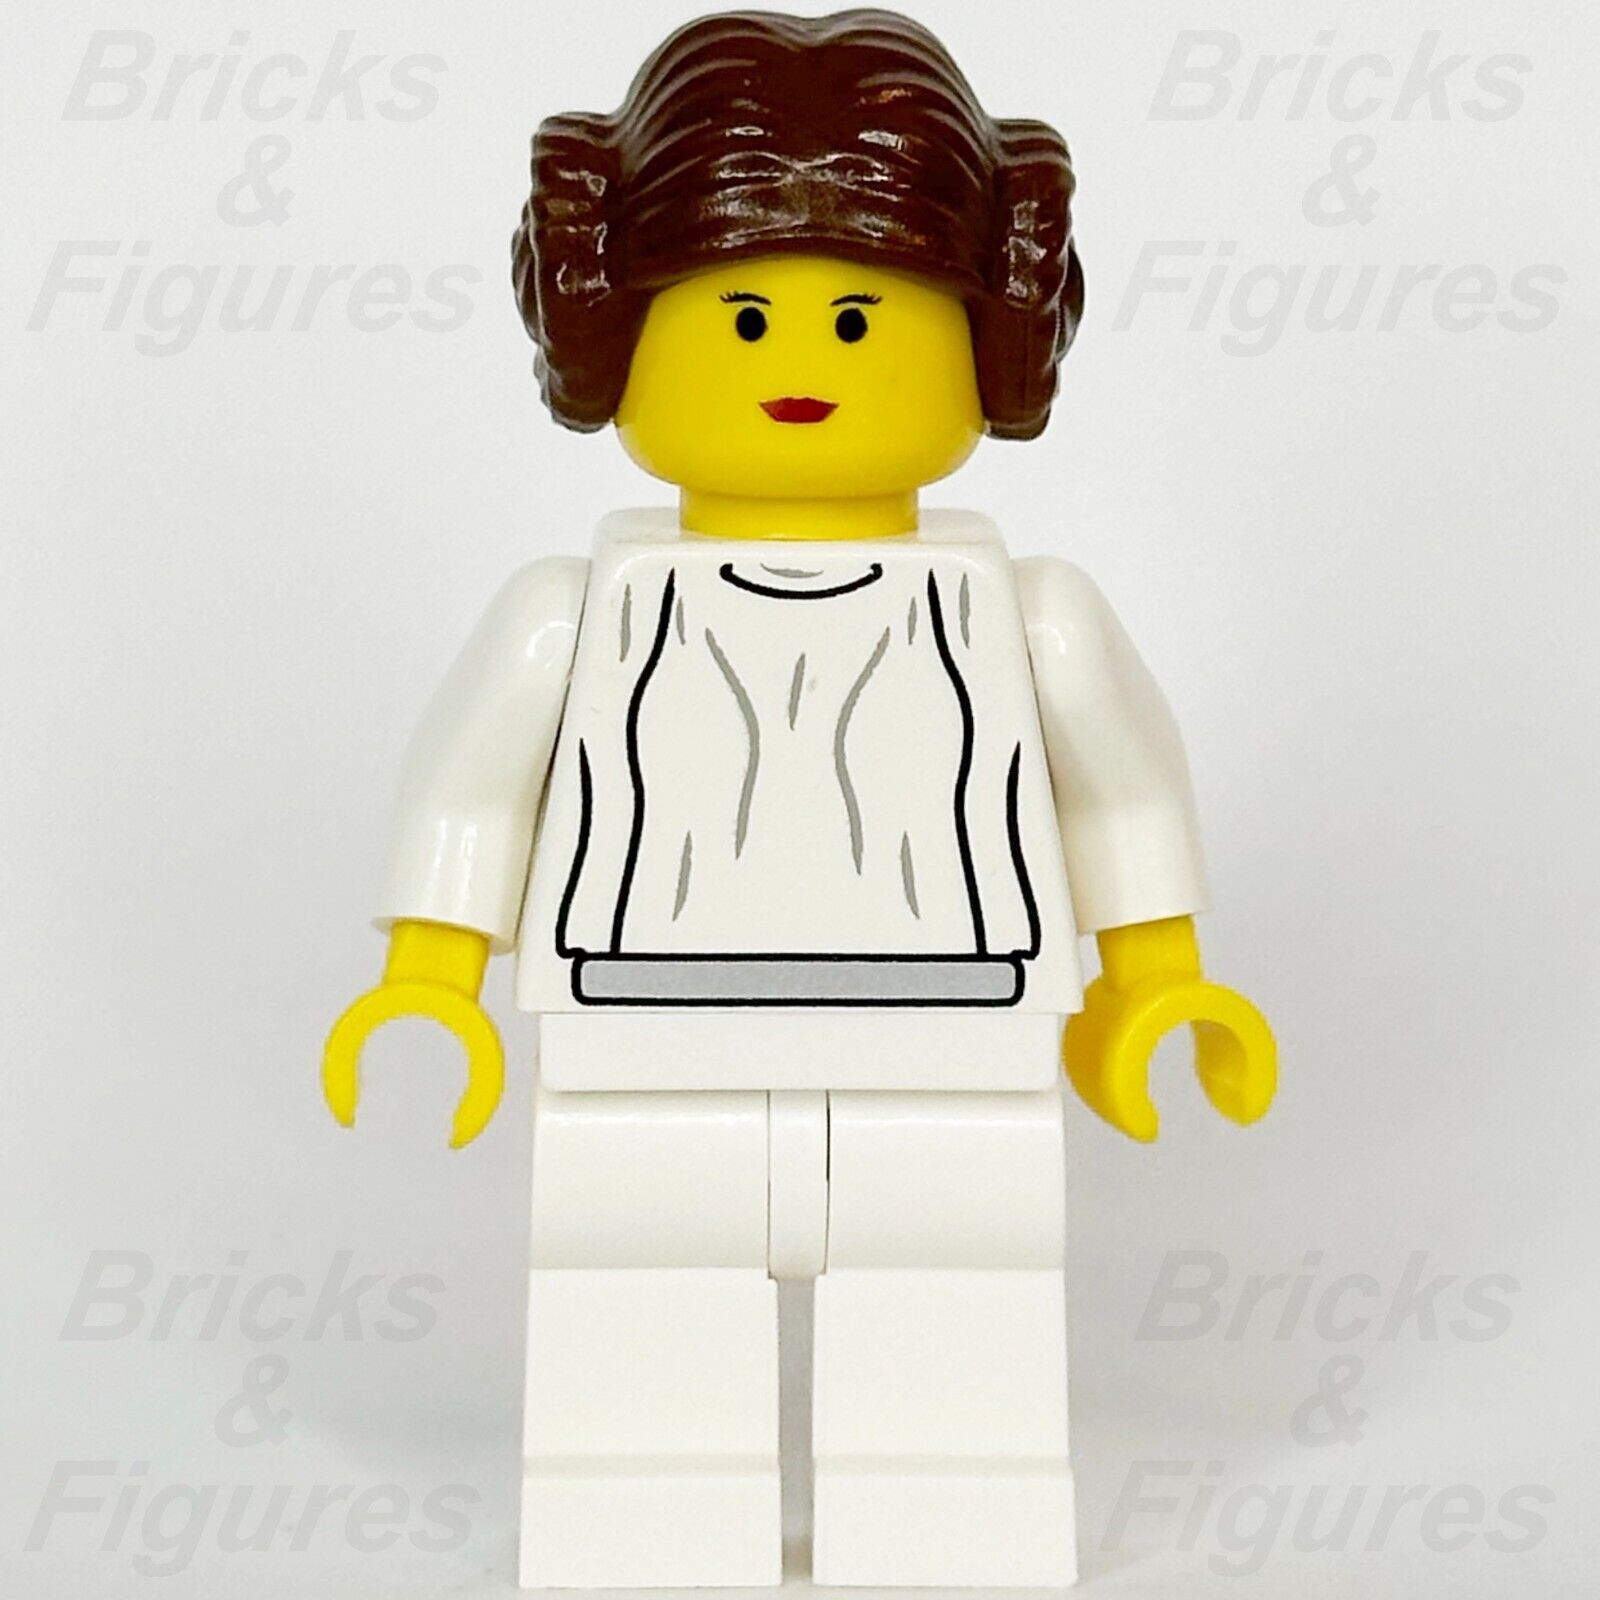 LEGO Star Wars Princess Leia Minifigure Episode 4/5/6 Yellow Skin 7190 sw0026